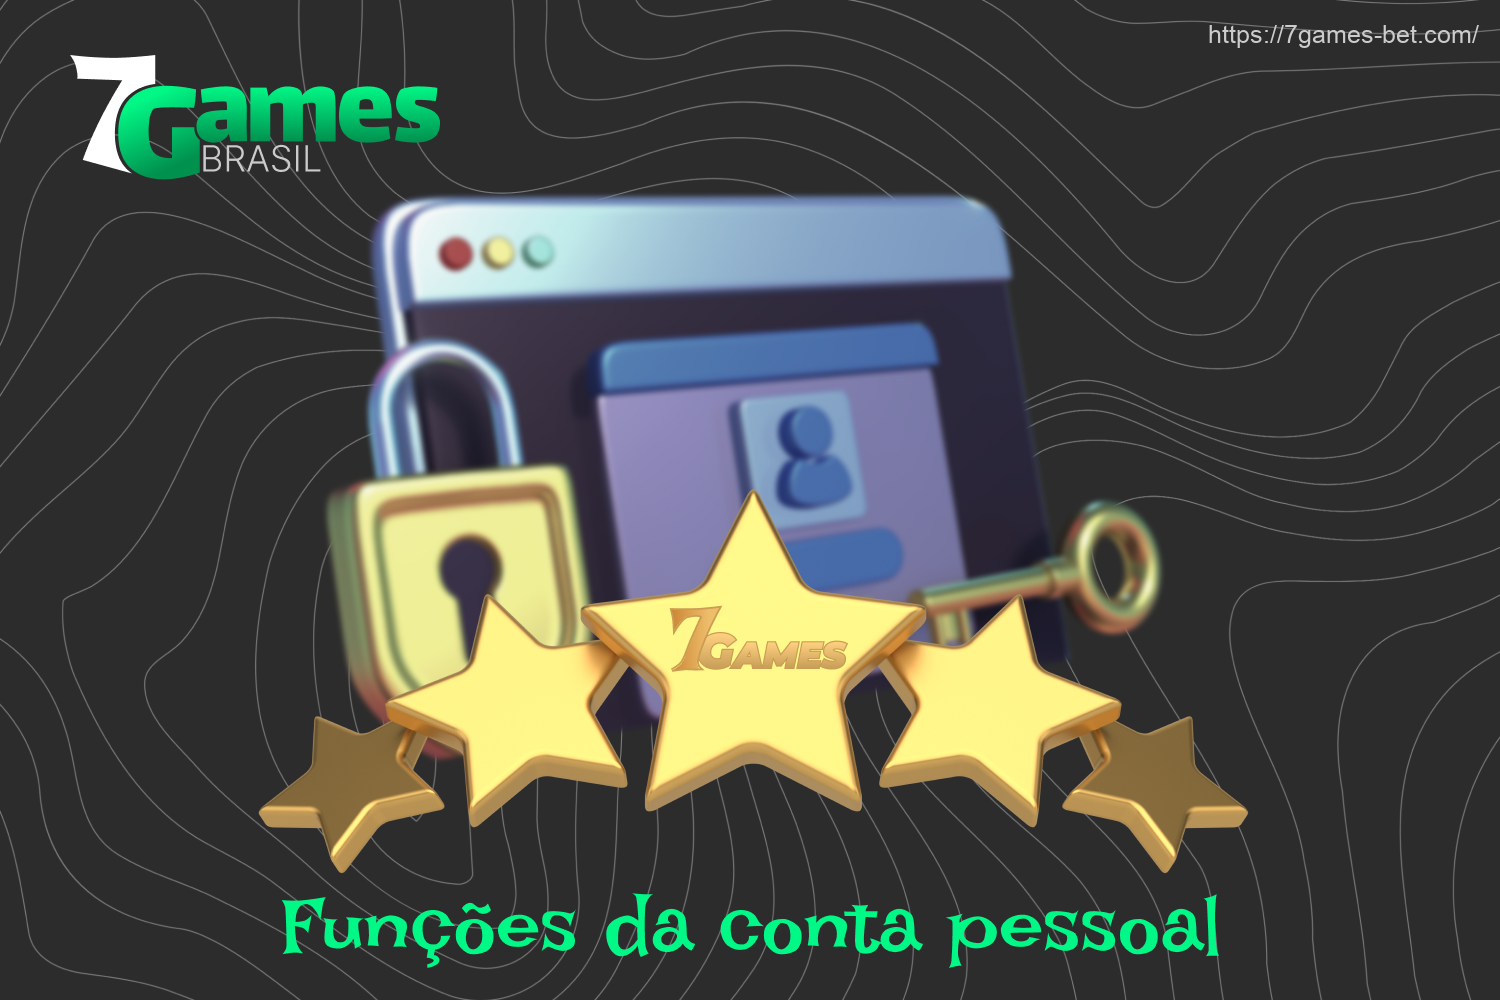 Depois de criar uma conta pessoal na 7Games, os brasileiros descobrem uma série de recursos e funções